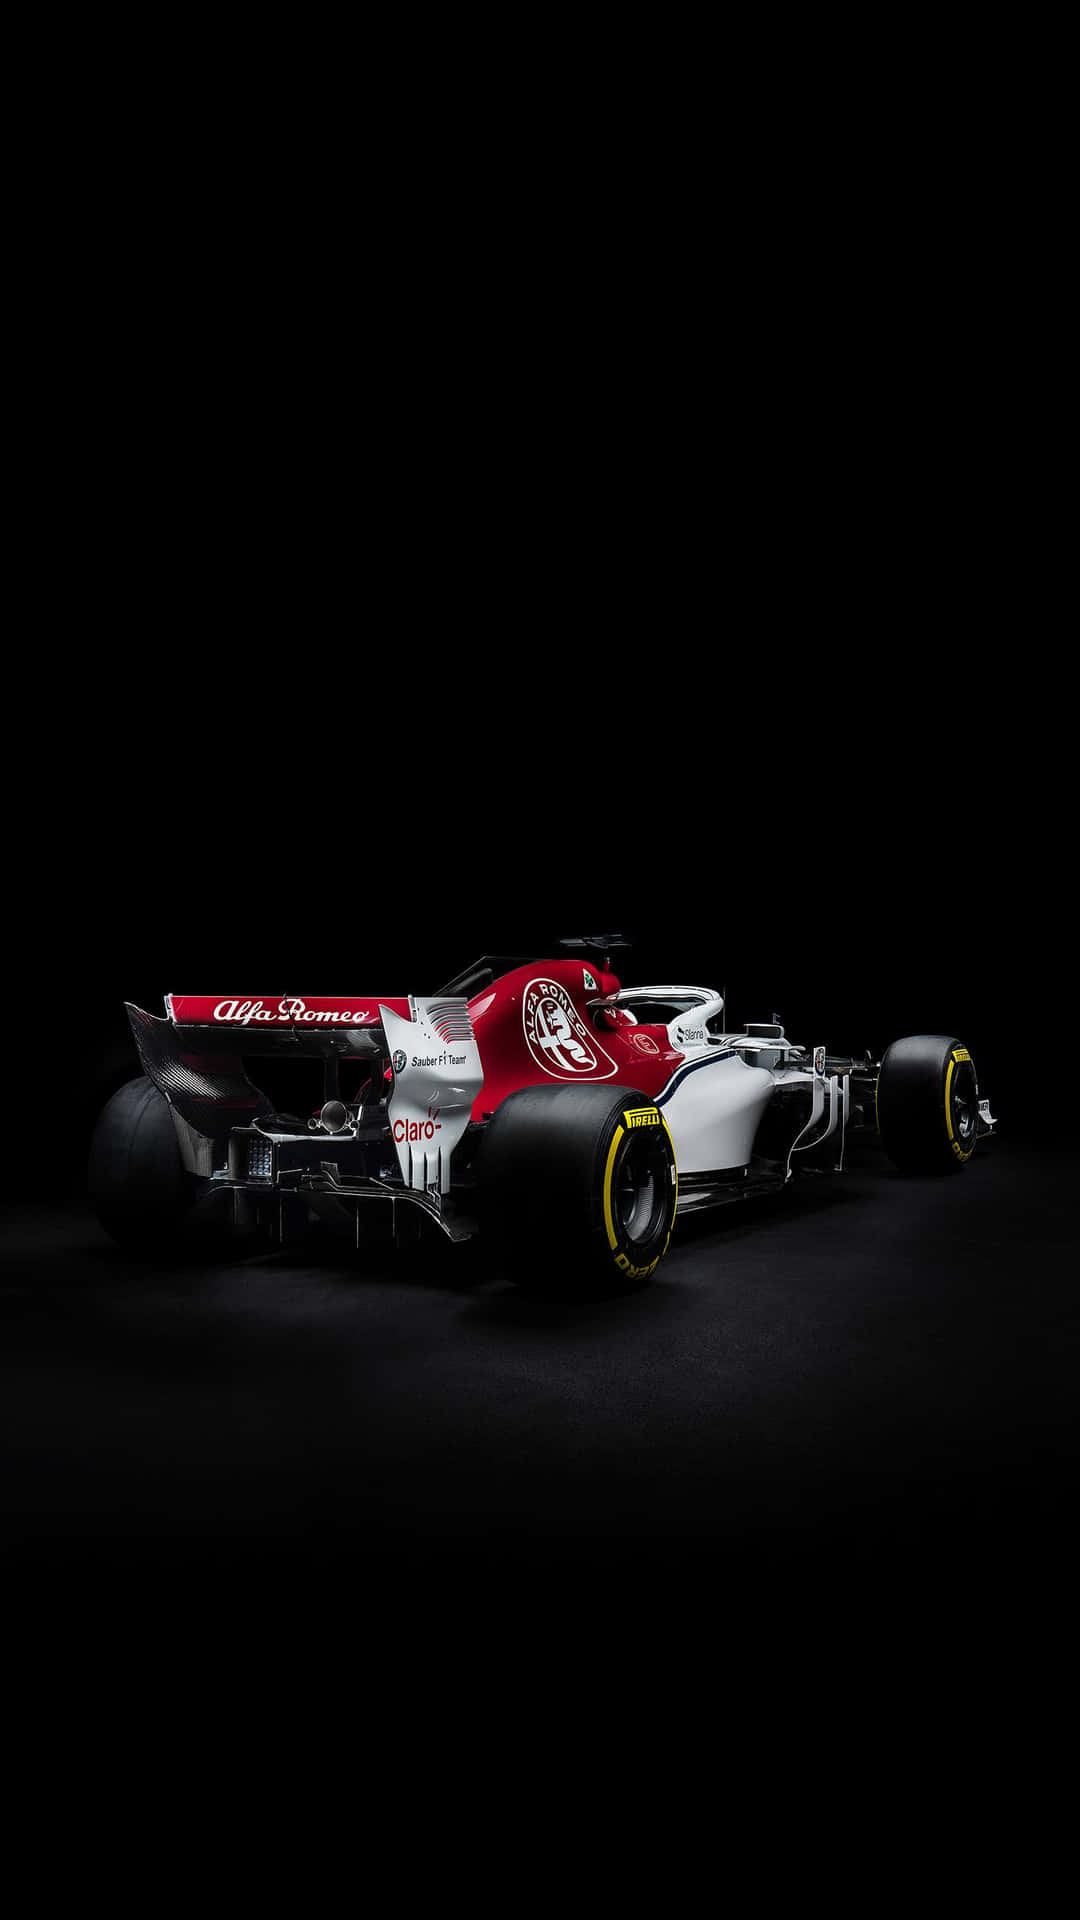 Nyd Spændingen i Formel Een Racing På Din Iphone. Wallpaper